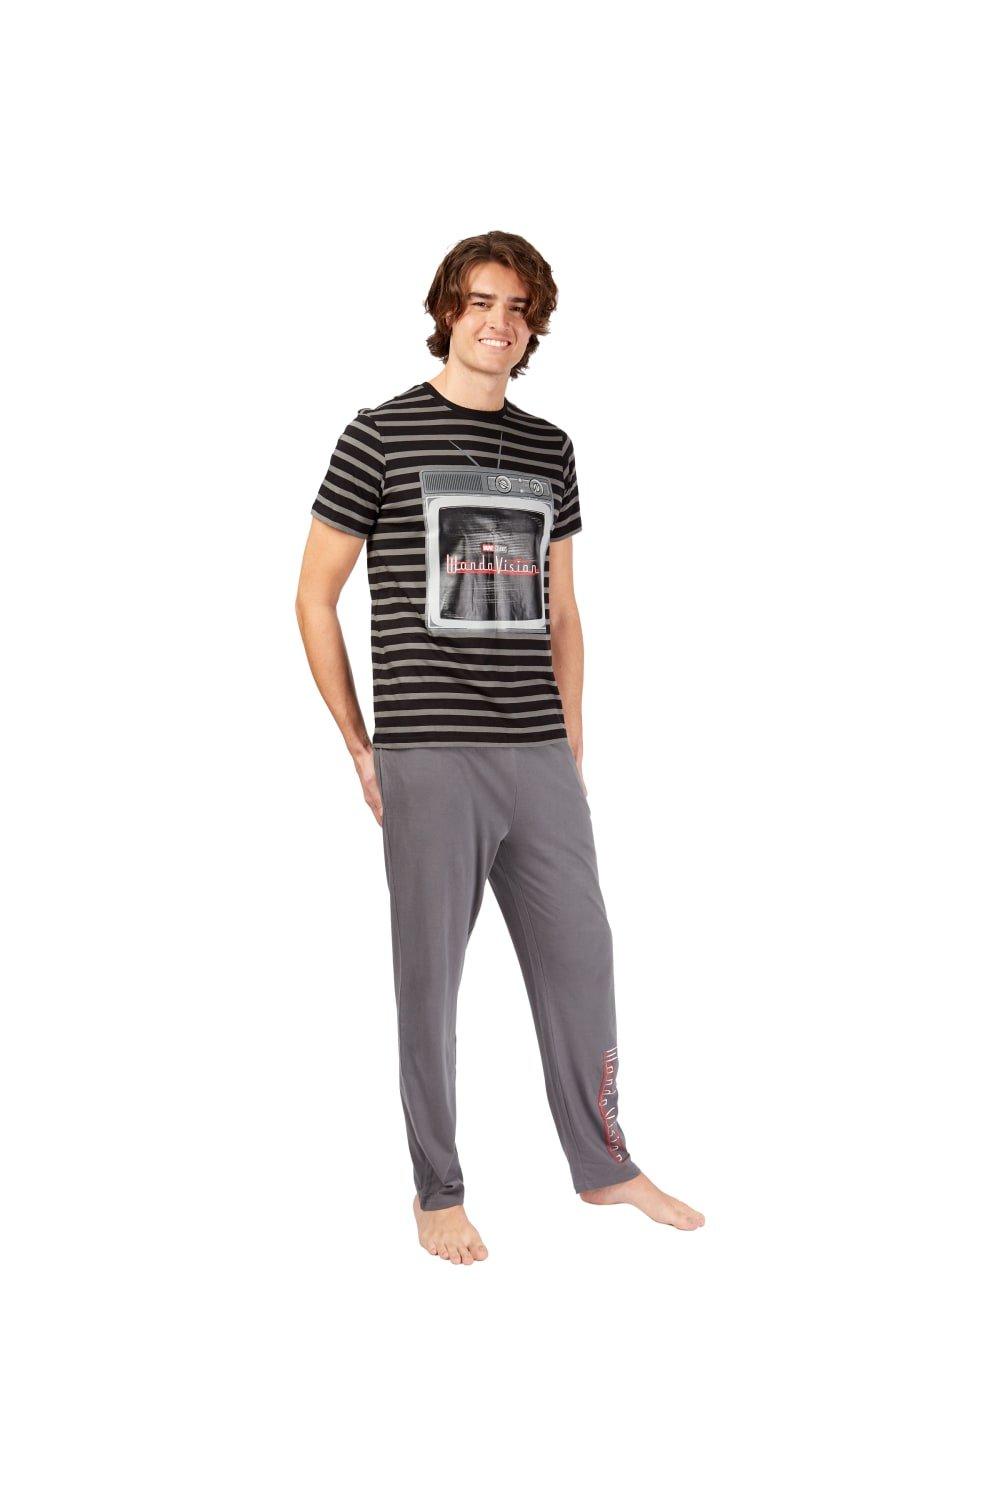 WandaVision Pyjamas